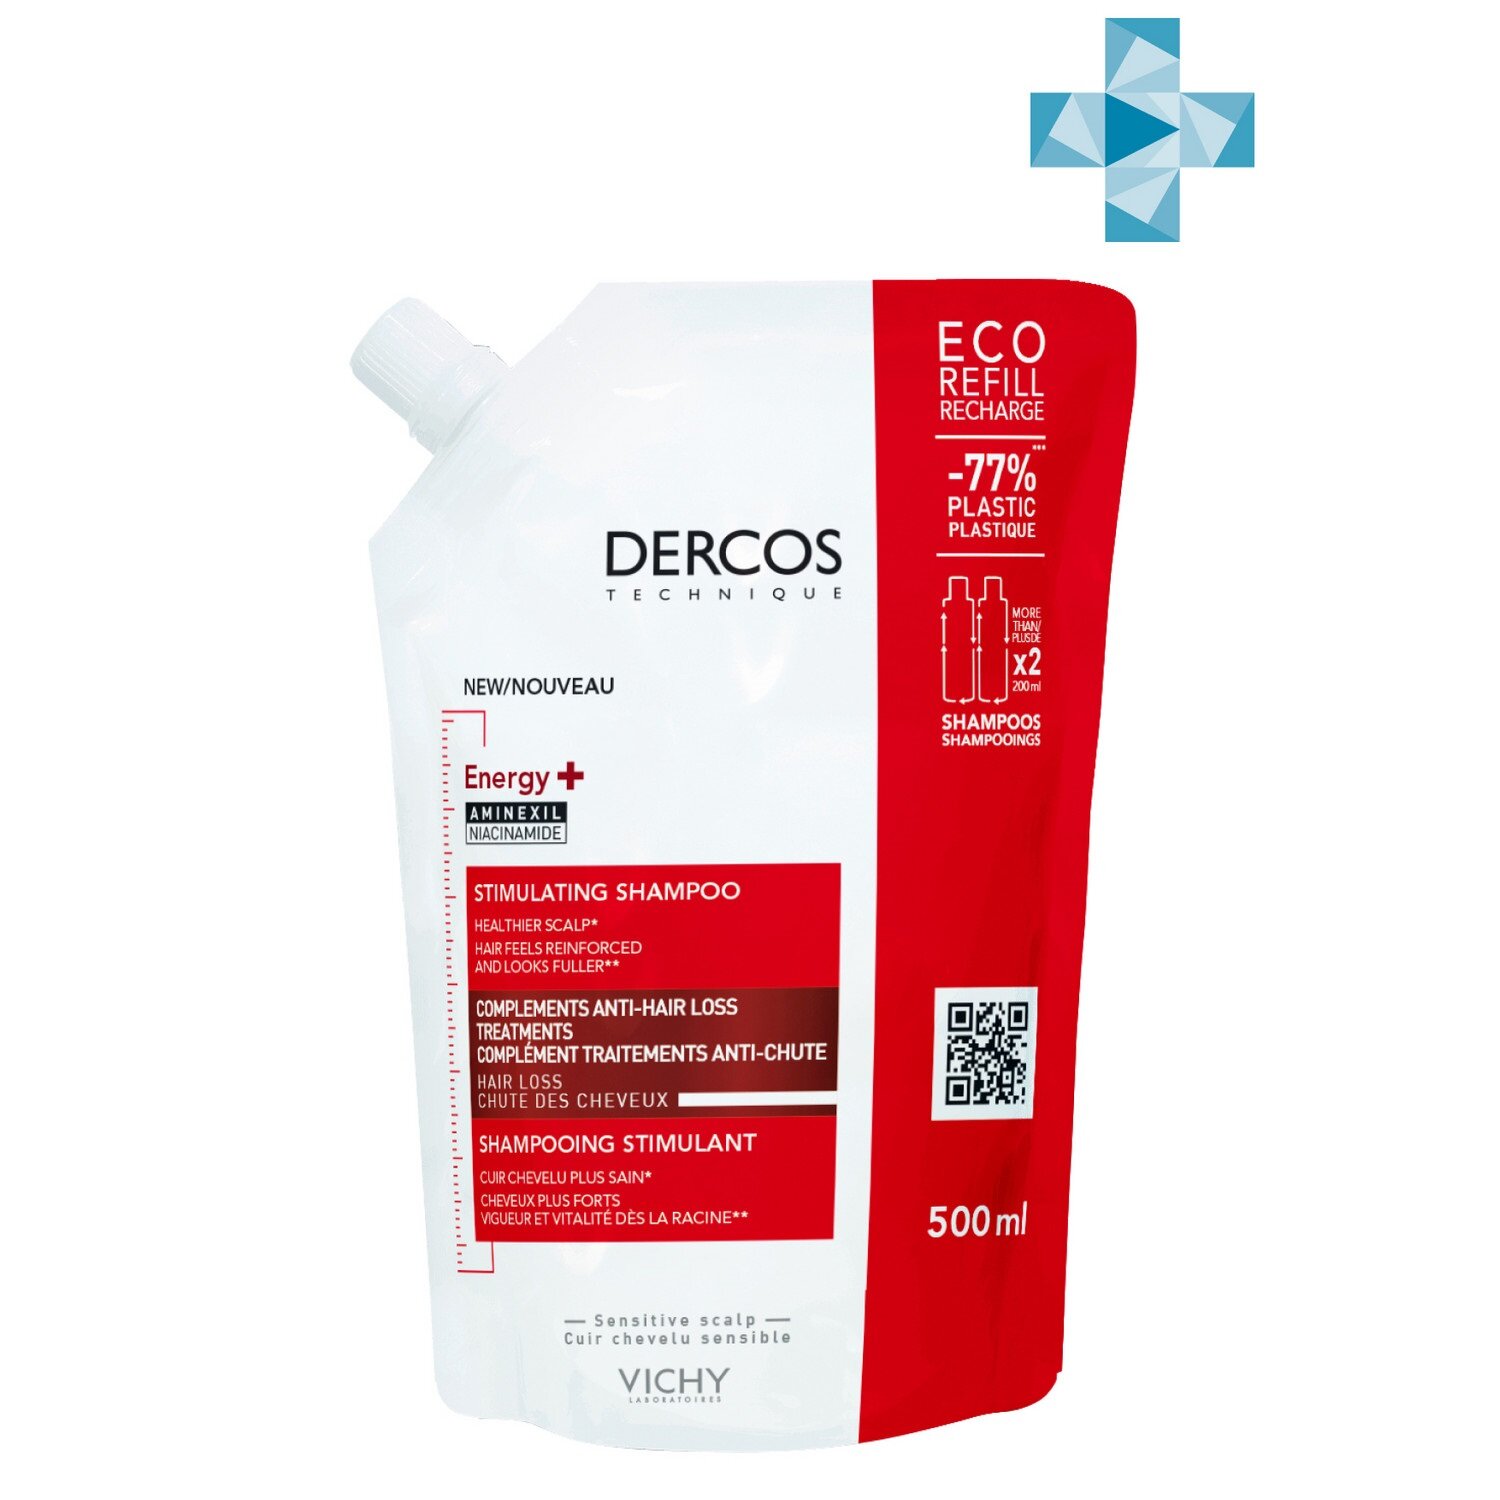 VICHY DERCOS Energy + Шампунь п/выпадения волос, 500мл эко-рефилла! Сменный блок